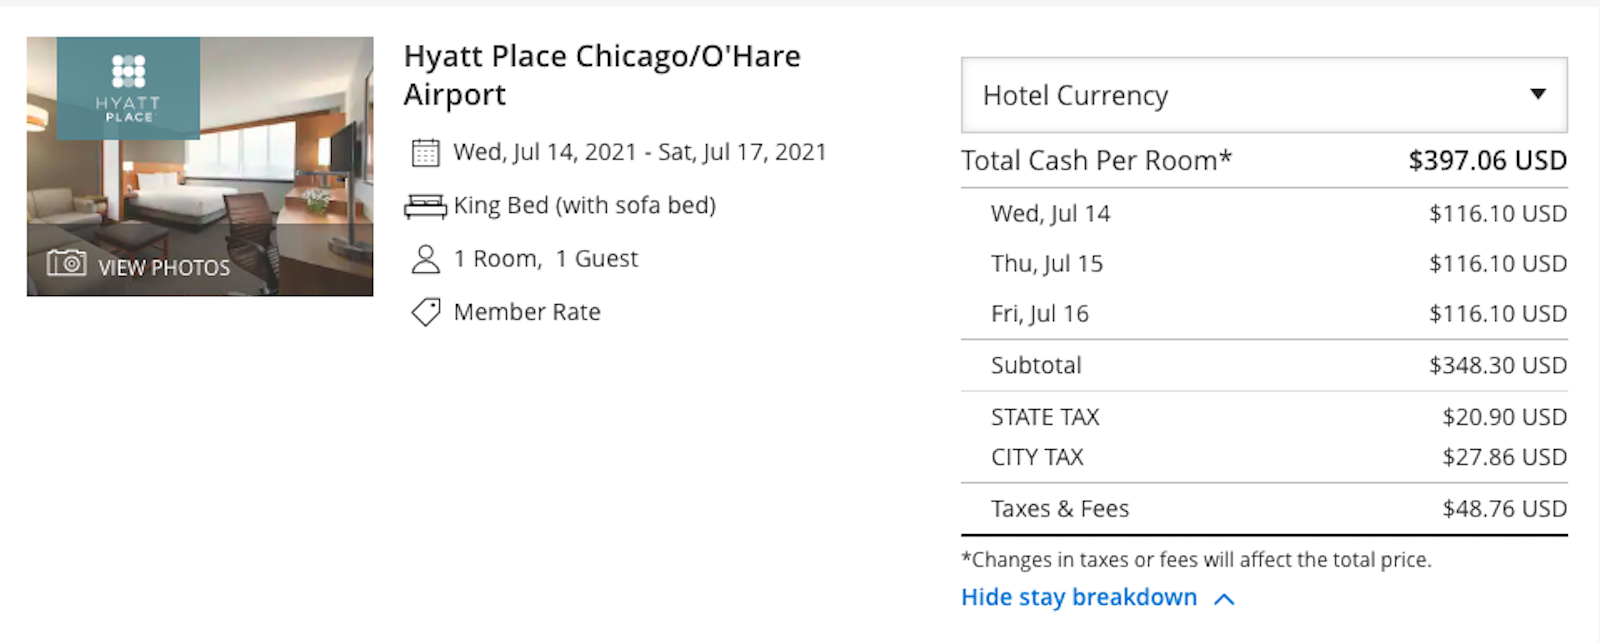 Update: Hyatt Place Chicago O'Hare No Longer Charging Energy Fee